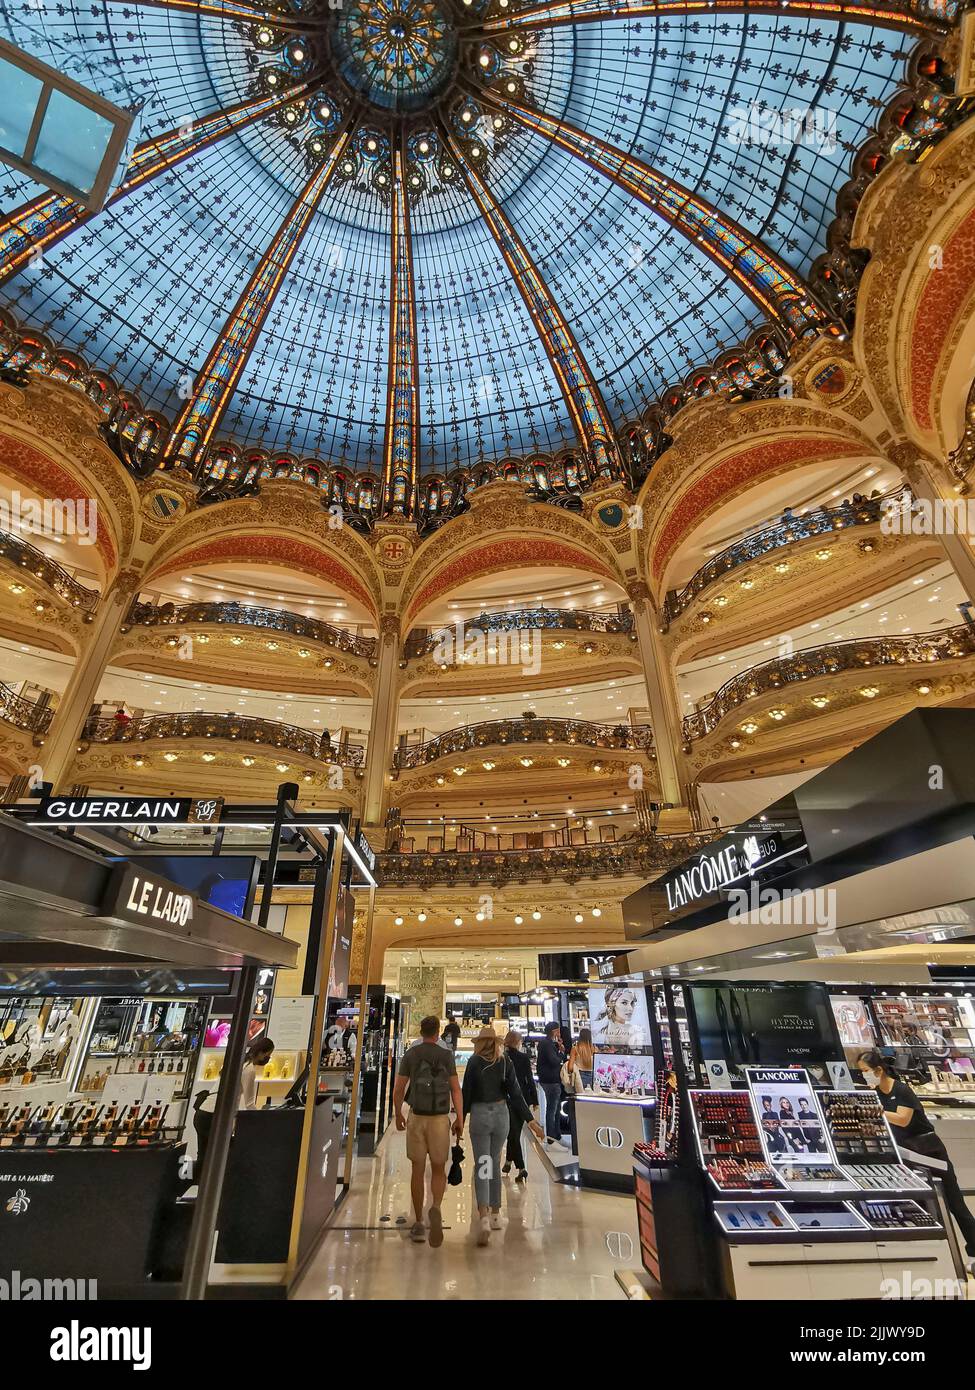 France, Paris, Galeries Lafayette Un centro comercial de lujo. Las Galerías Lafayette ofrece a sus visitantes una espléndida cúpula de cristal, que se eleva a un Foto de stock